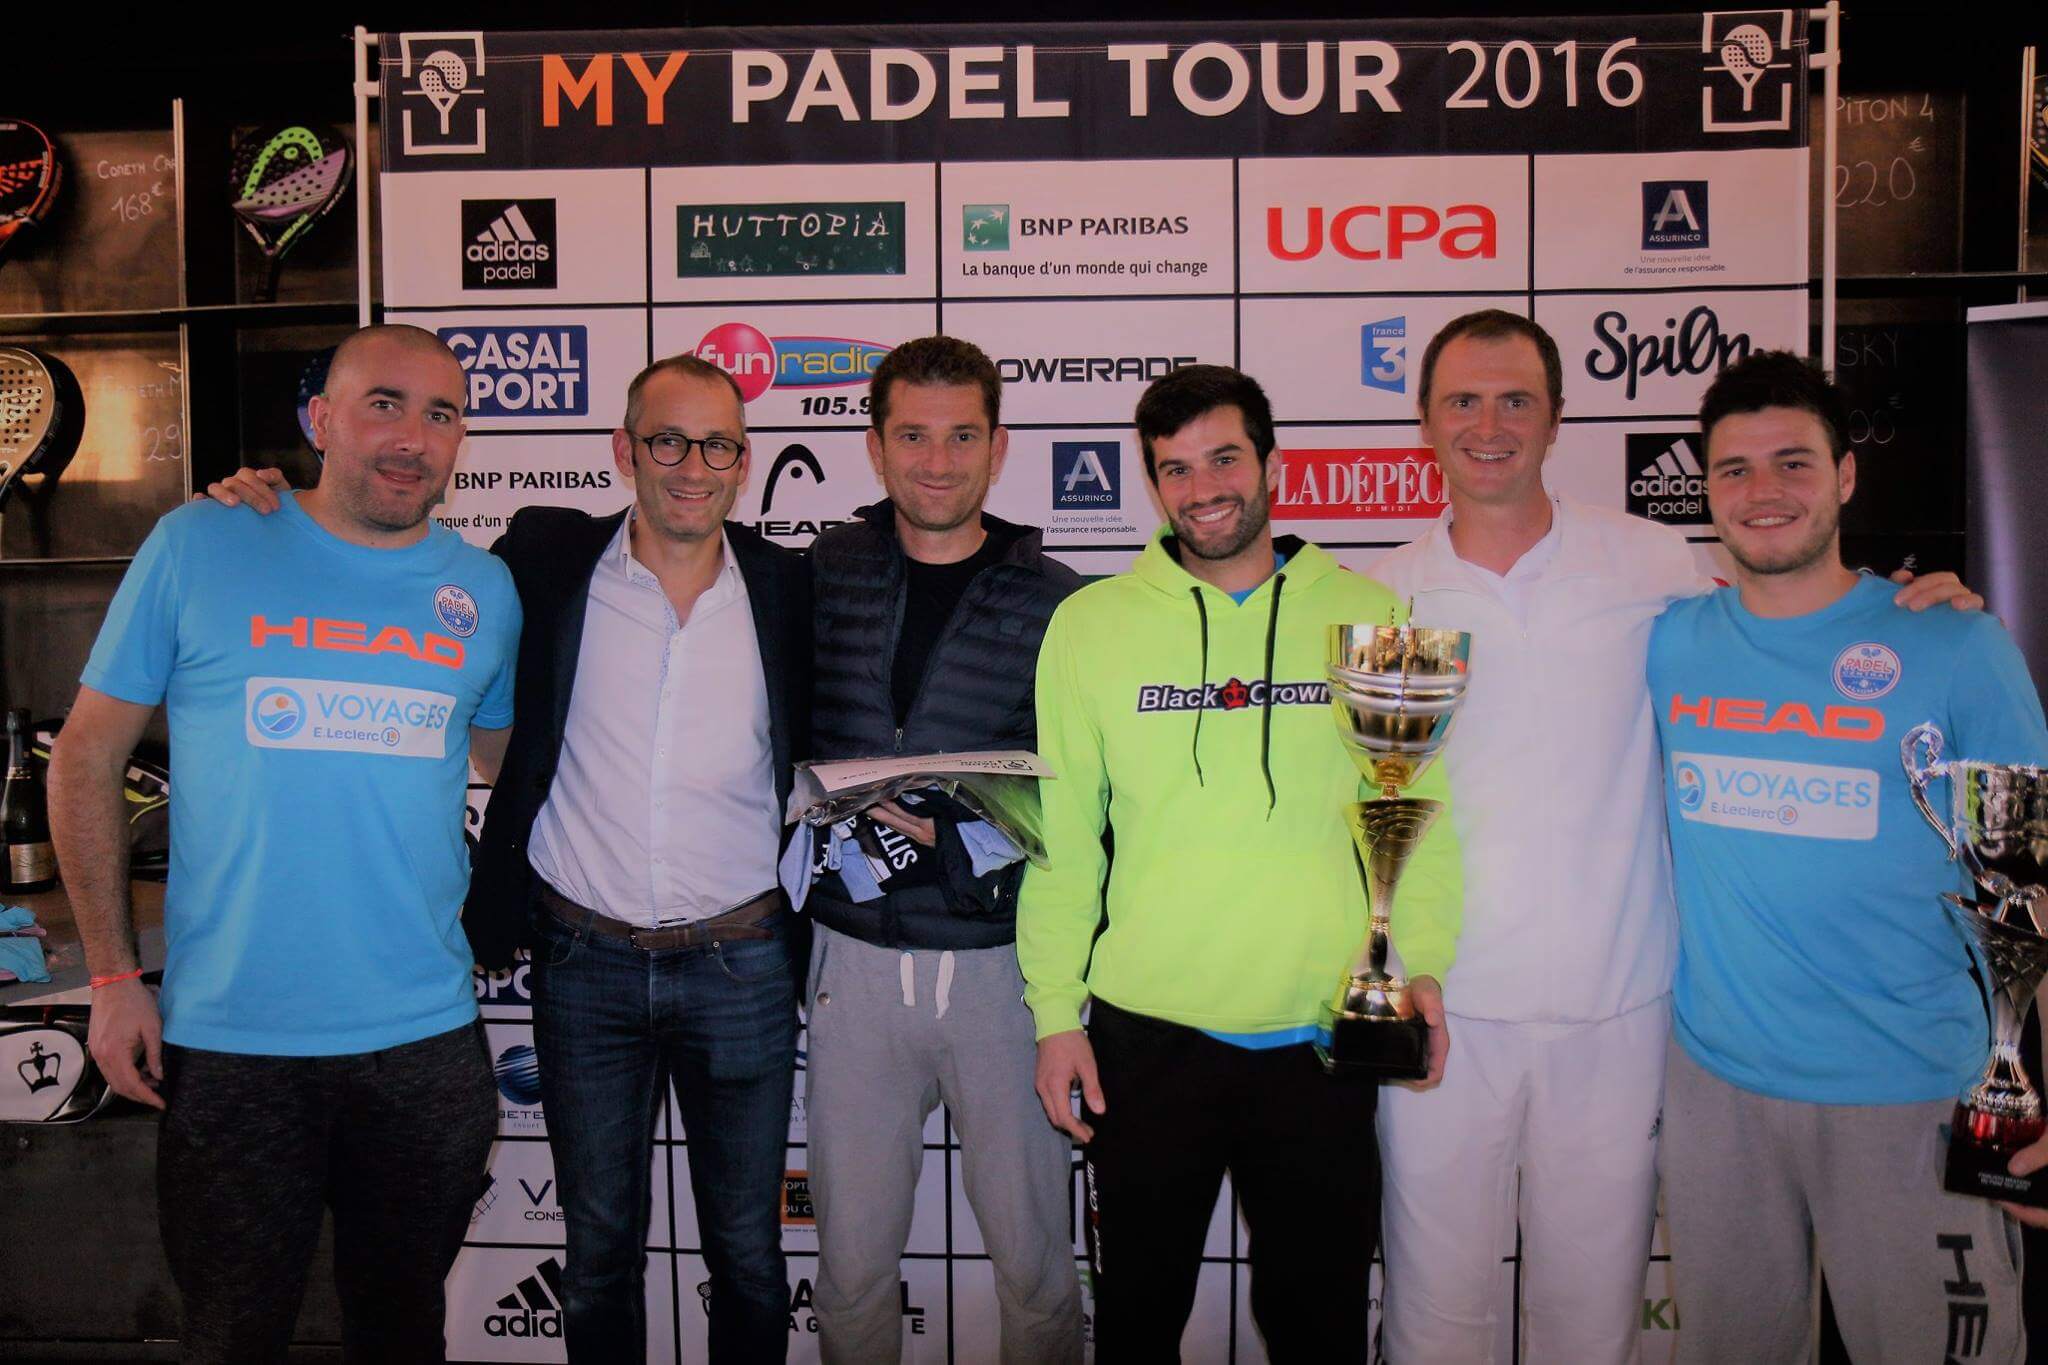 Ferrandez / Gauthier ja Vandaele / Godallier voittavat My Padel Tour 2016